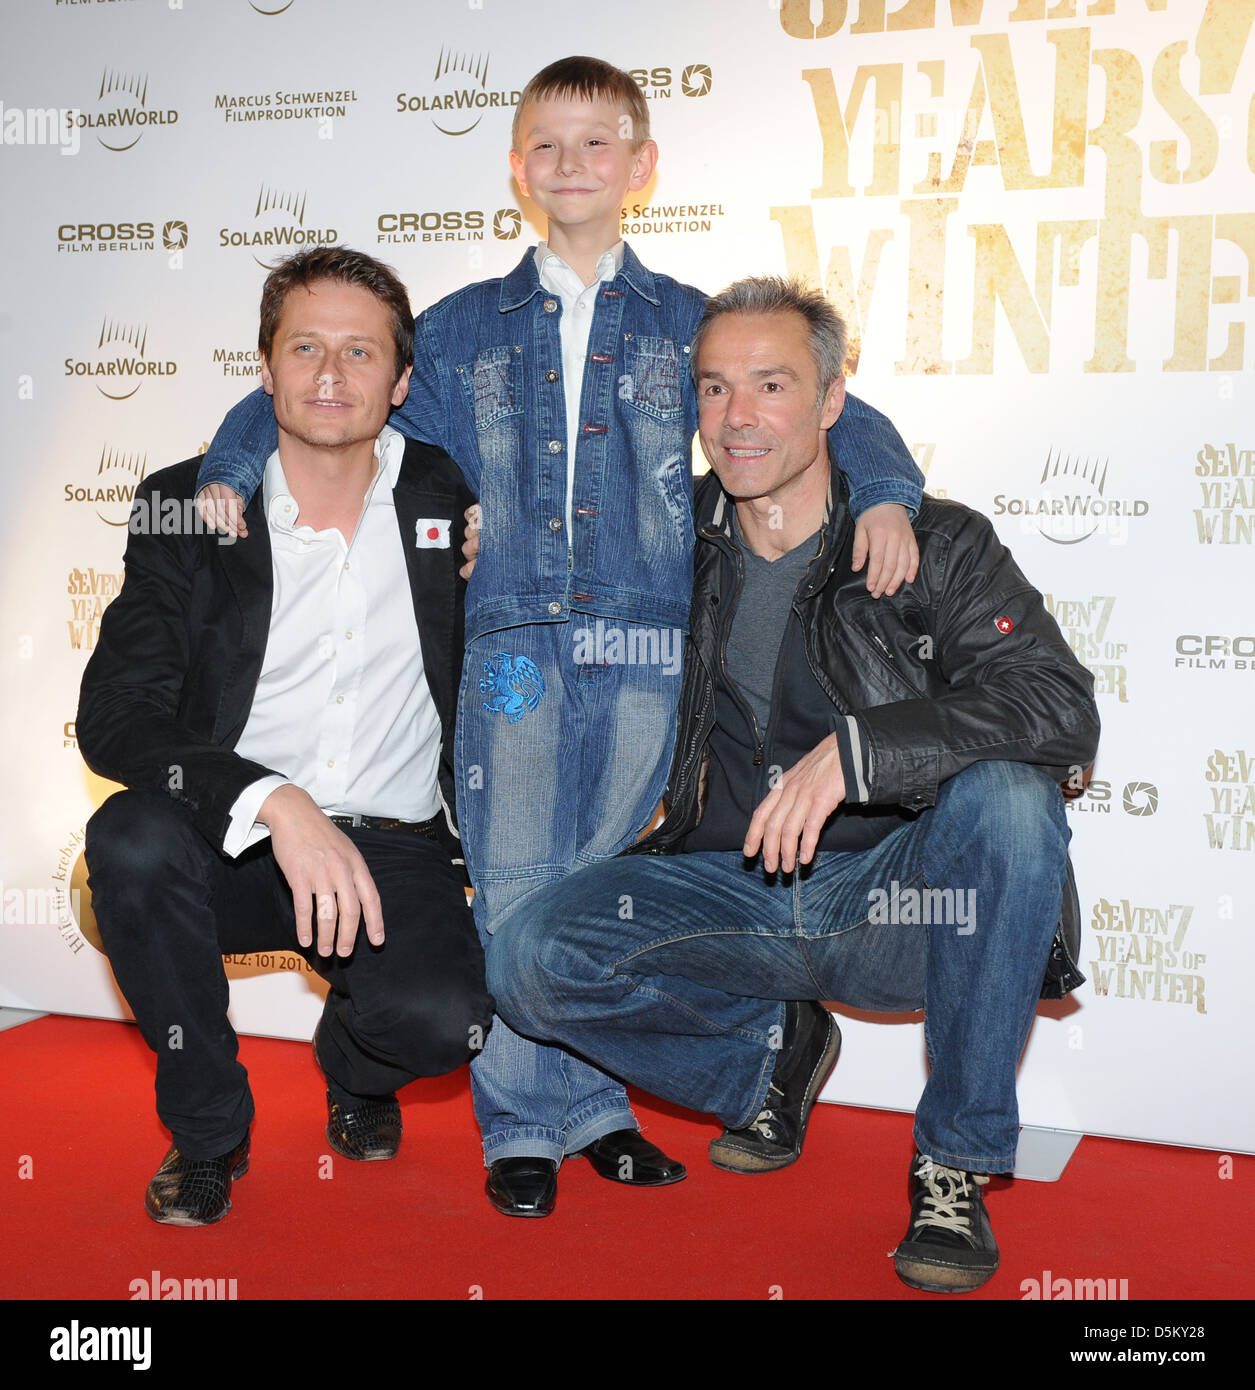 Roman Knizka e Sasha Savenkov e Hannes Jaenicke alla carità premiere del film "anche anni di inverno' al cinema Babilonia. Foto Stock